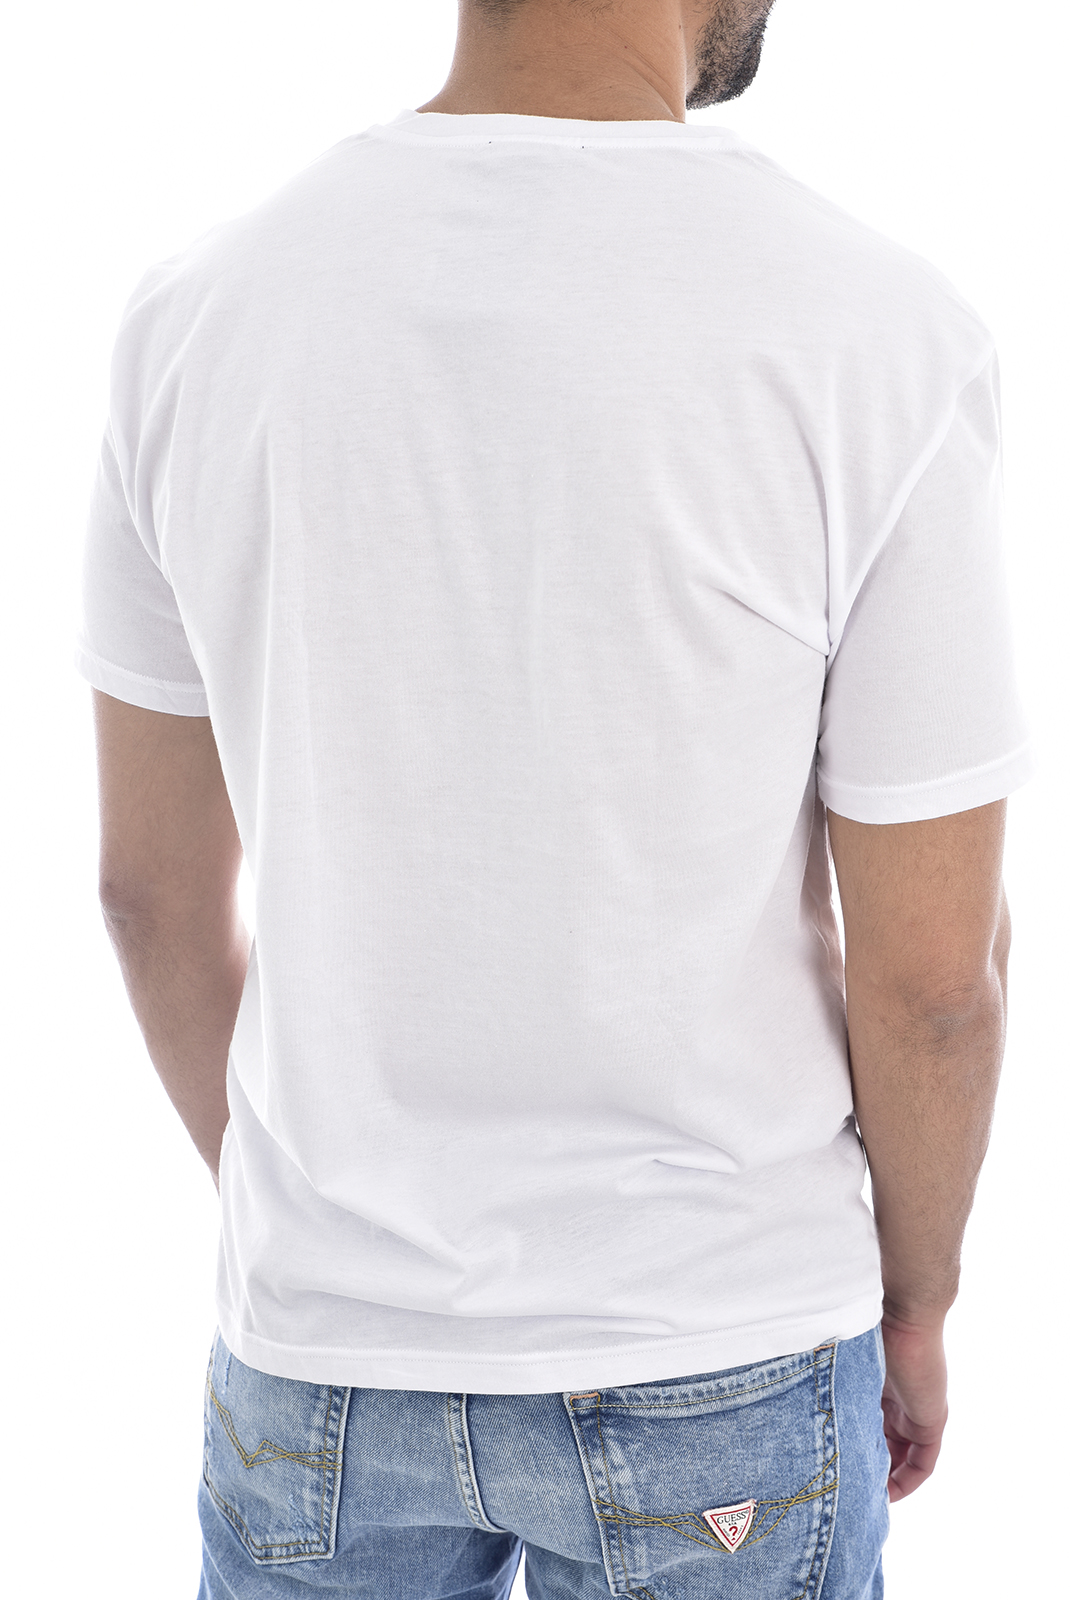 Emporio Armani Tee-shirt Blanc À Manches Courtes 111028 9a578